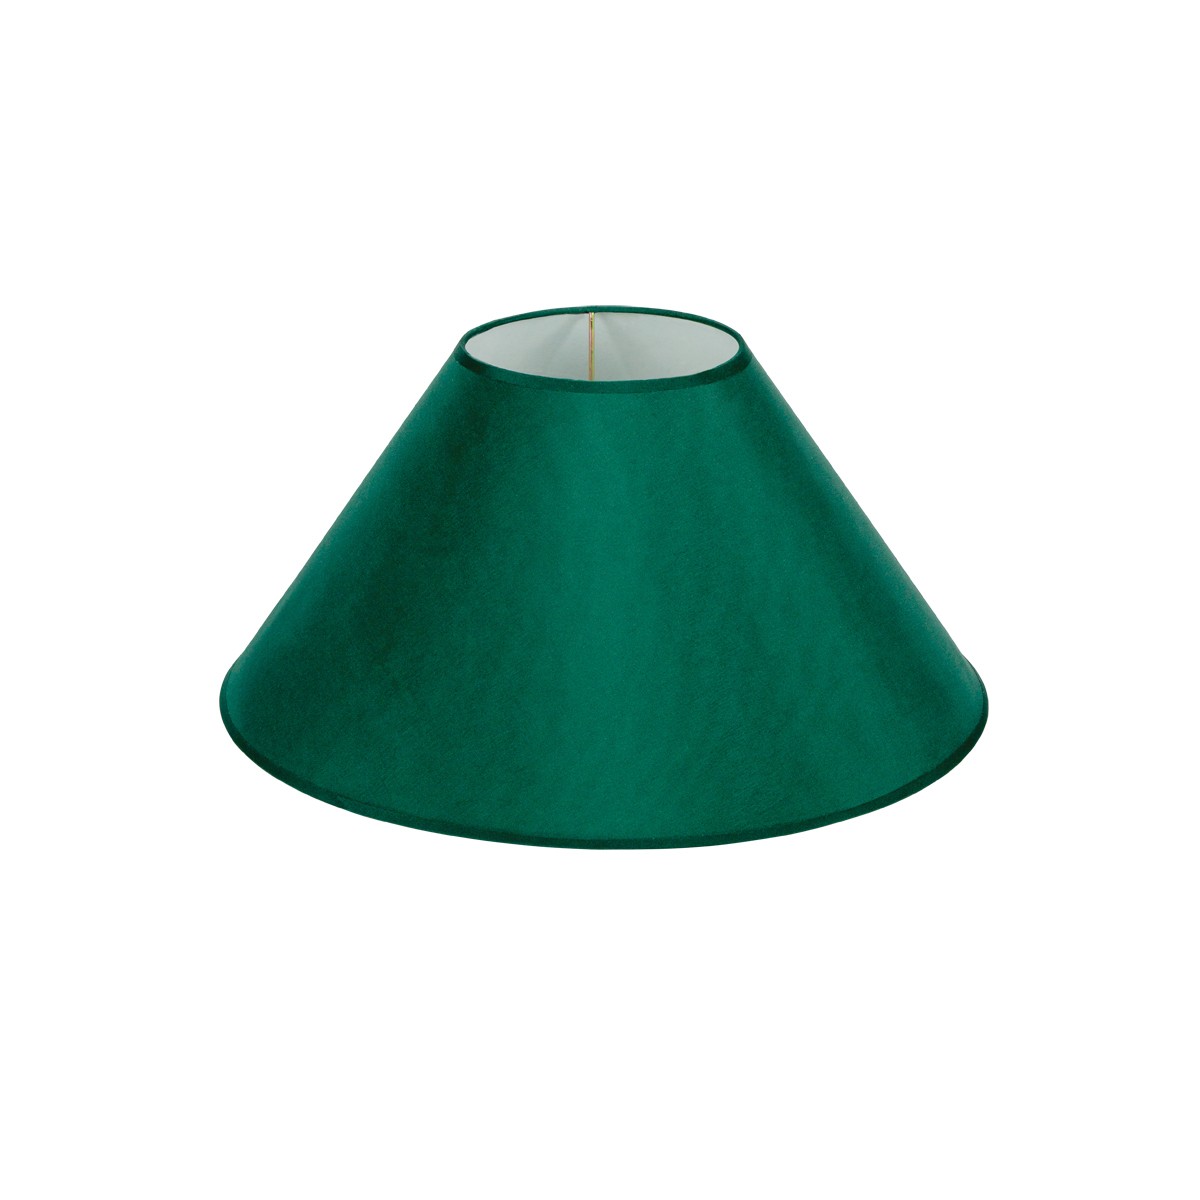 Καπέλο Μονόχρωμο Στρογγυλό Φ35cm Κάτω Πλευρά -Σε Πράσινο Χρώμα        VK/E27/E14/D35/GR